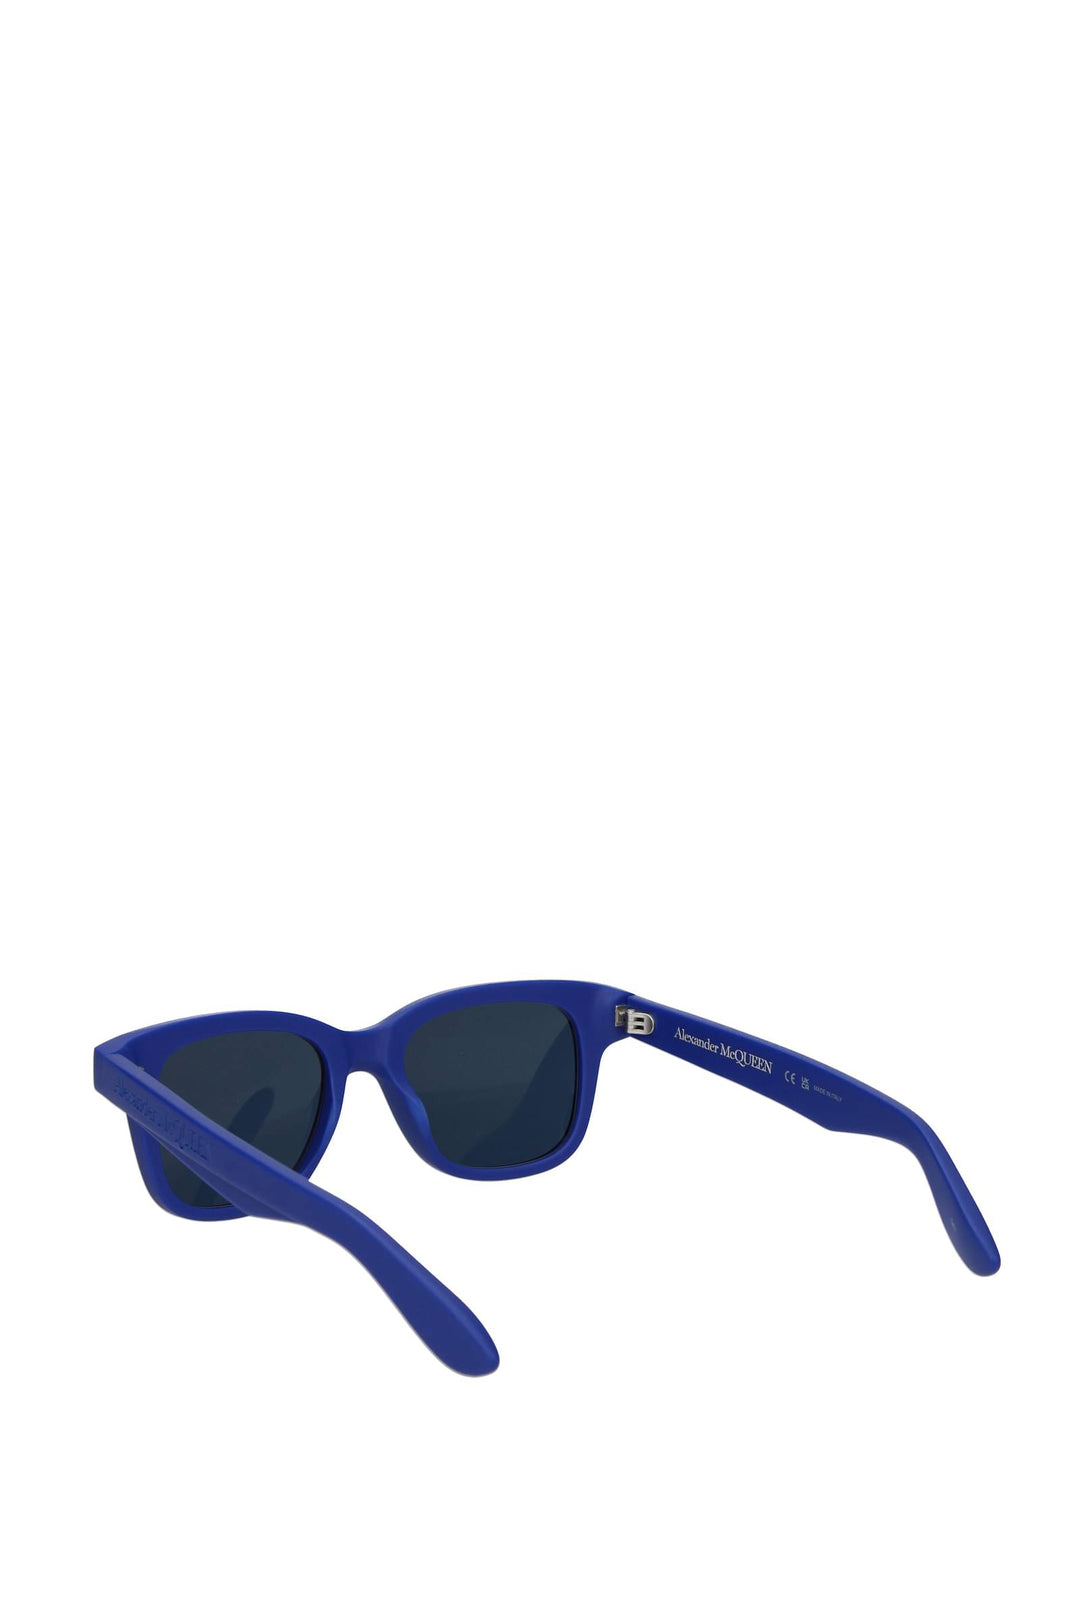 Occhiali Da Sole Acetato Blu Blu Imperiale - Alexander McQueen - Uomo